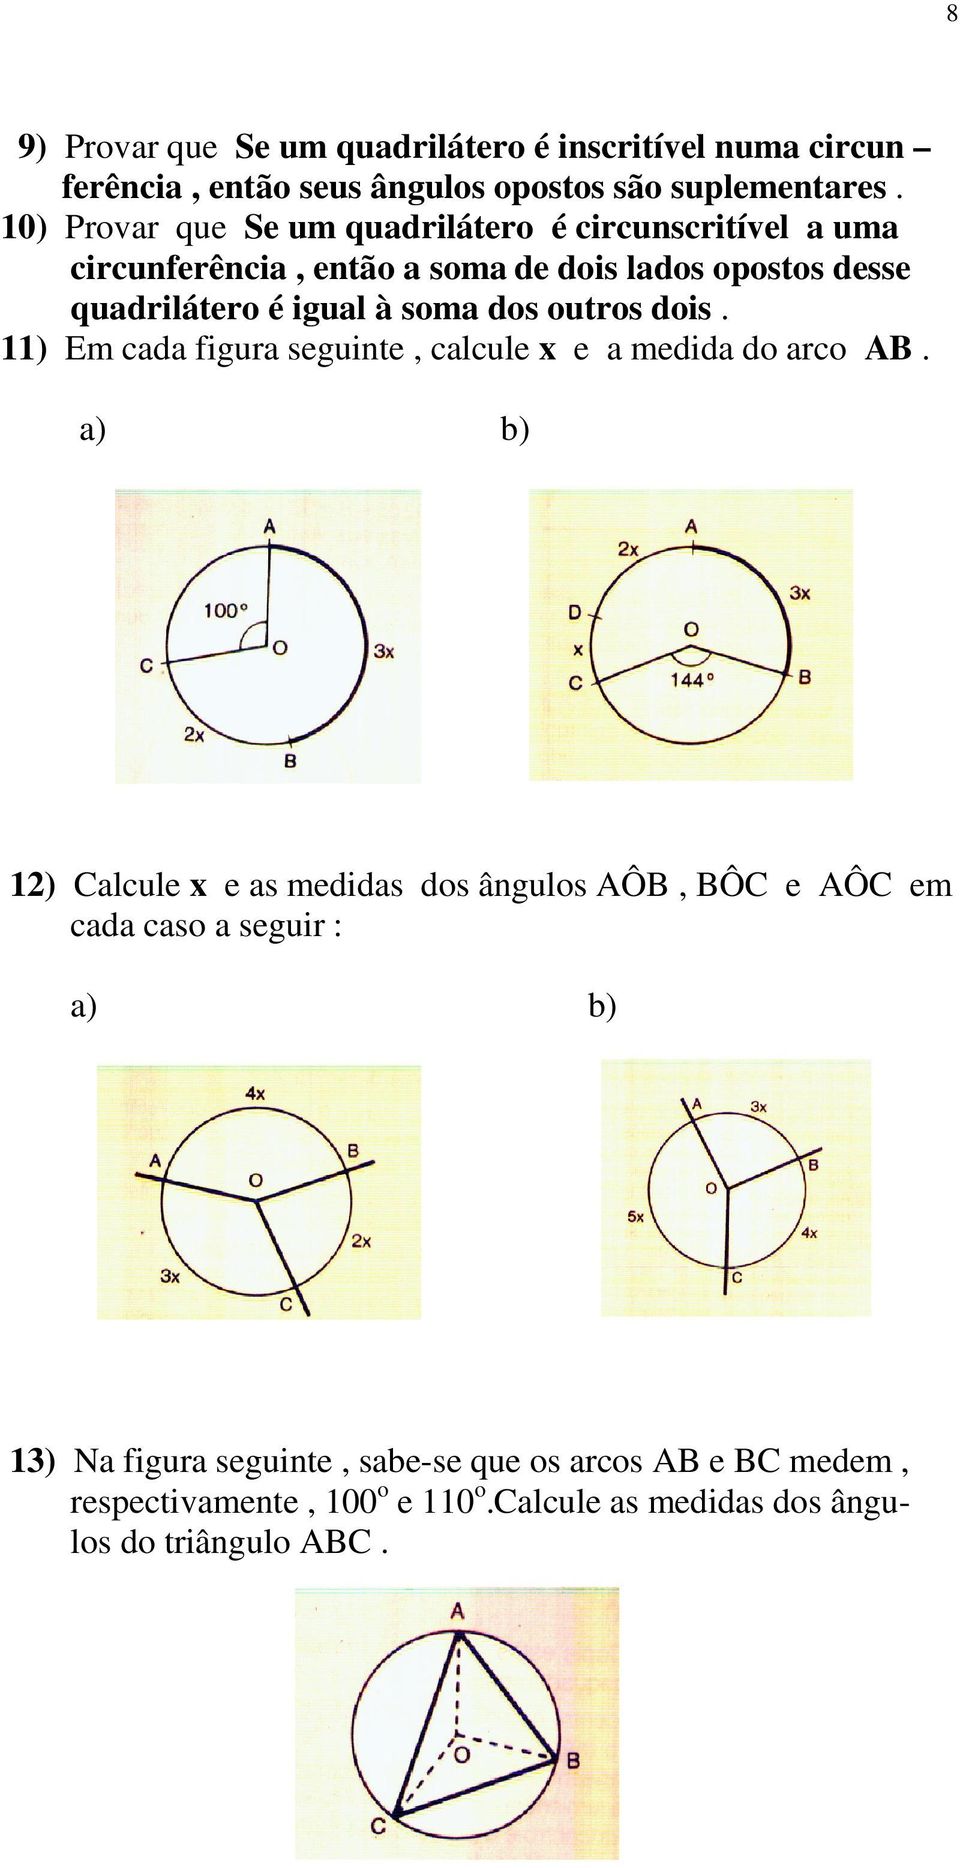 soma dos outros dois. 11) Em cada figura seguinte, calcule x e a medida do arco AB.